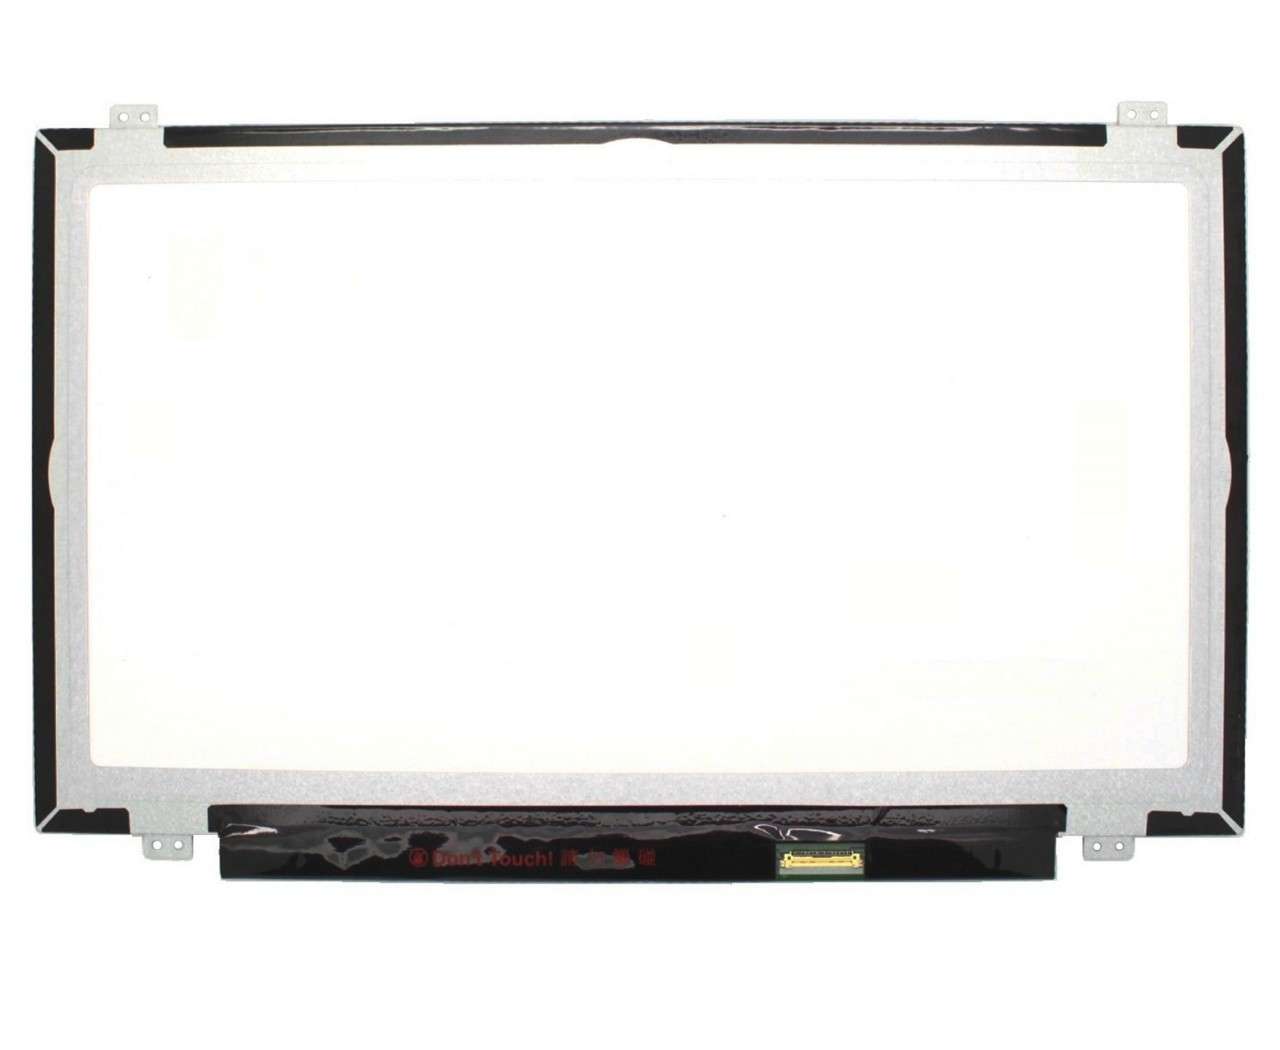 Display laptop Lenovo SD10N46911 Ecran 14.0 1920×1080 30 pini eDP imagine 2021 Lenovo